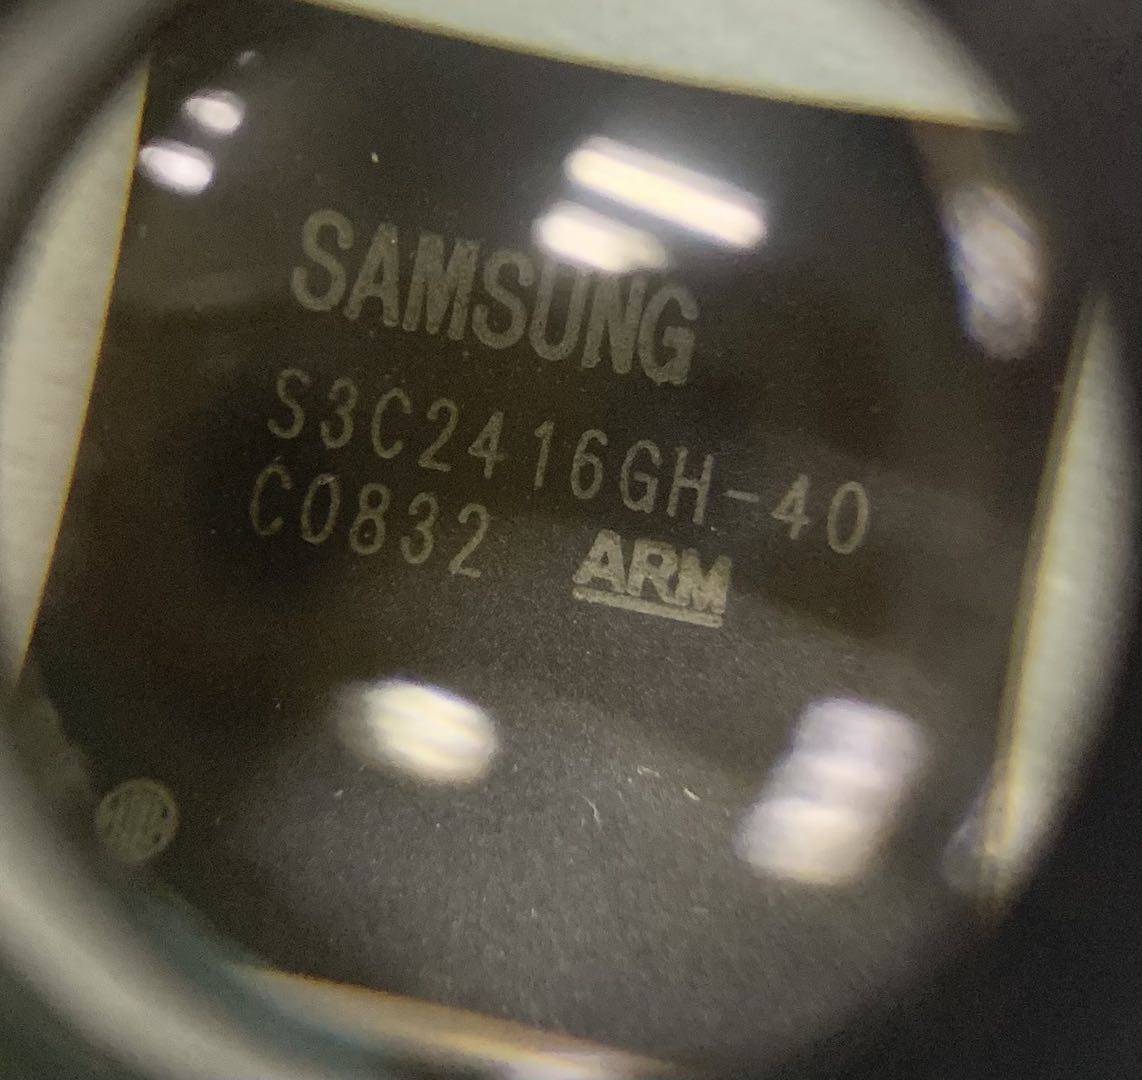 samsung S3C2416GH-40 ARM